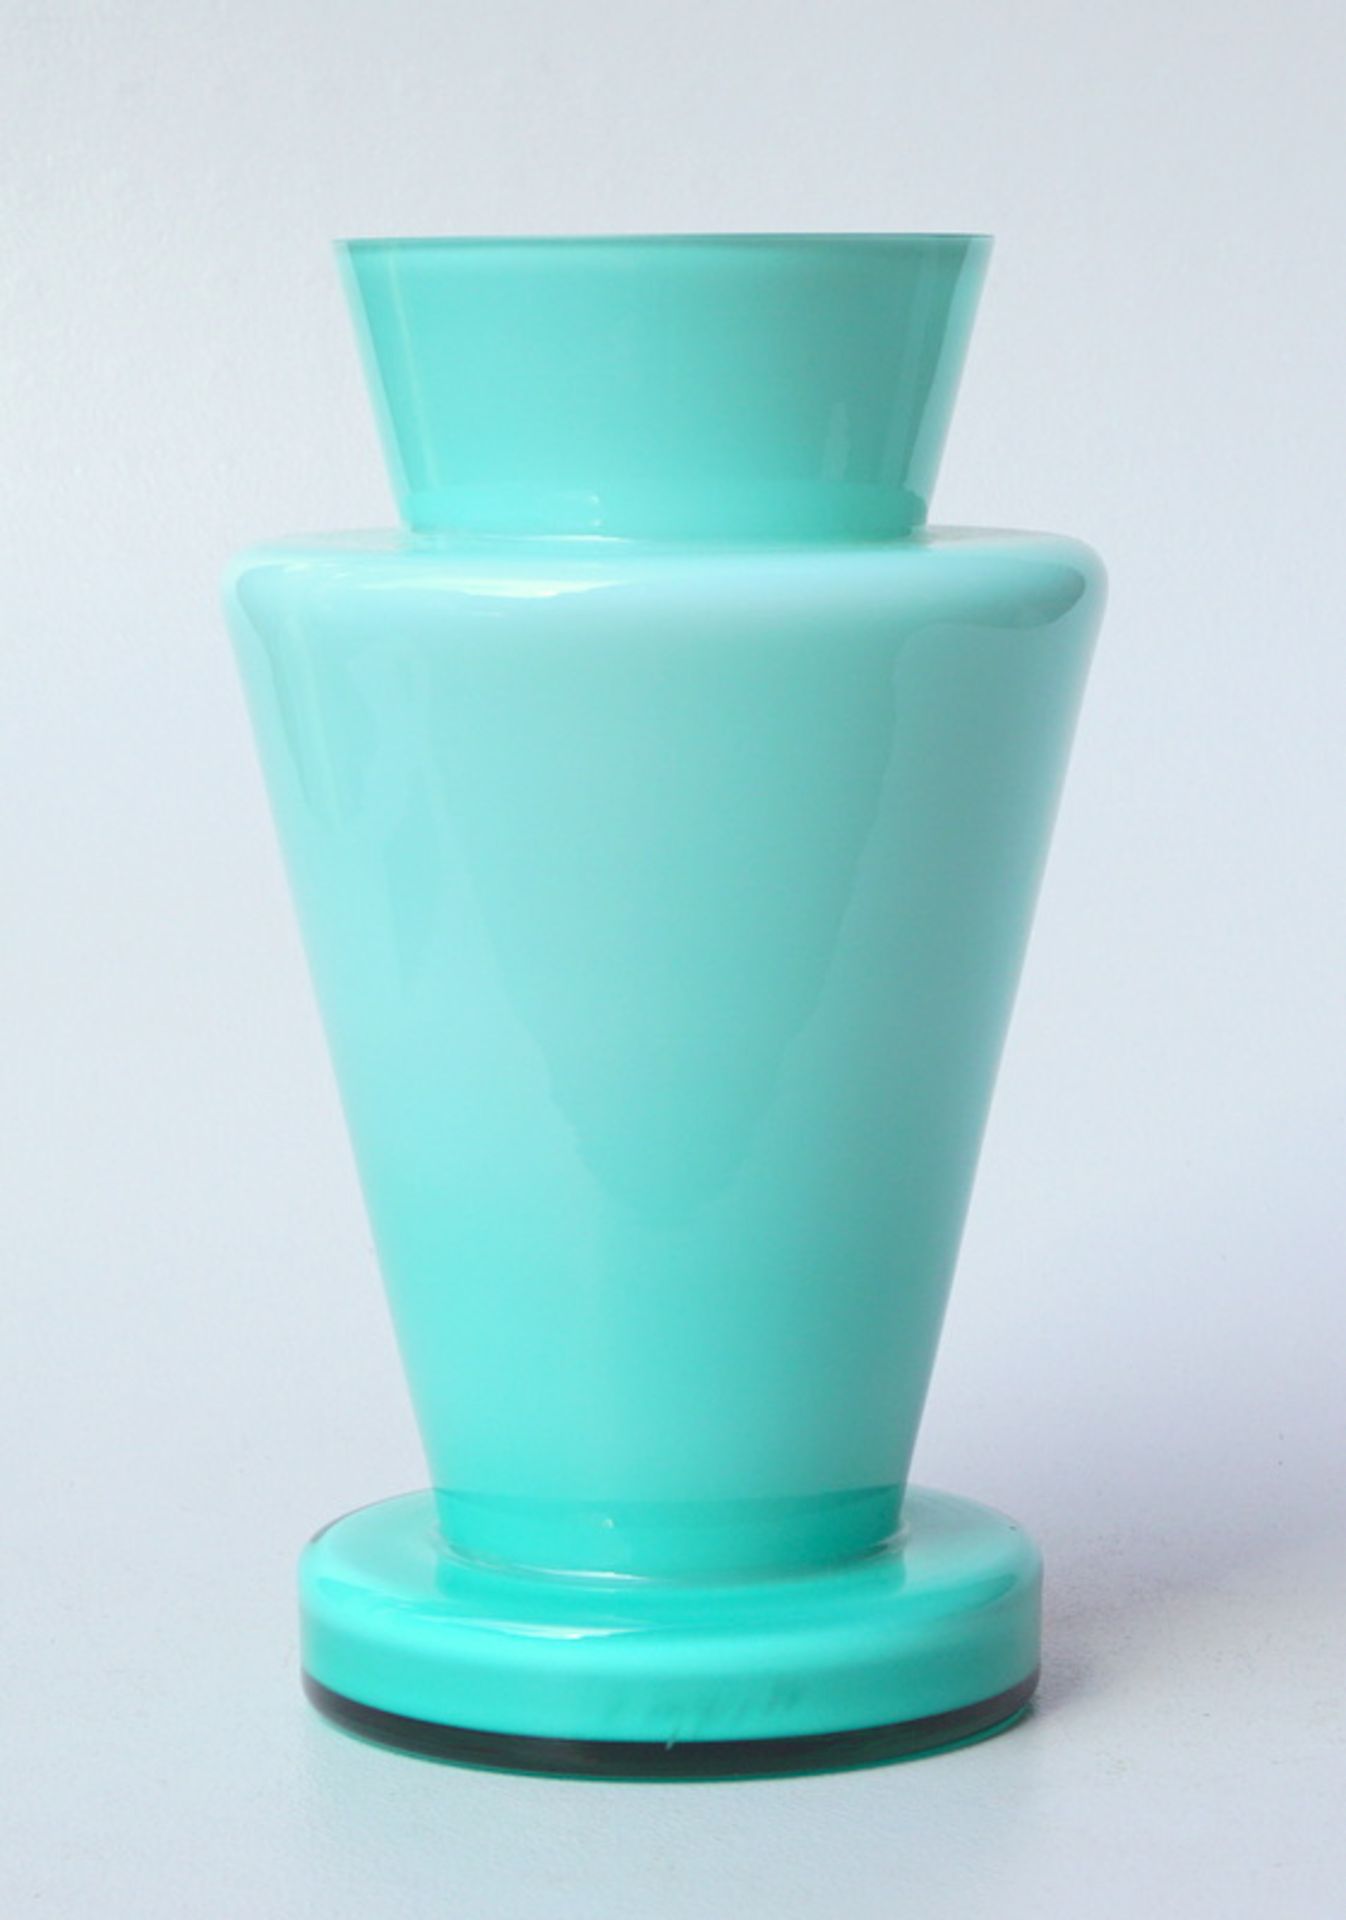 Sieger Design, Ritzenhoff Glas: Vase mit türkisfarbenem Überfandweißes Glas türkisfarben